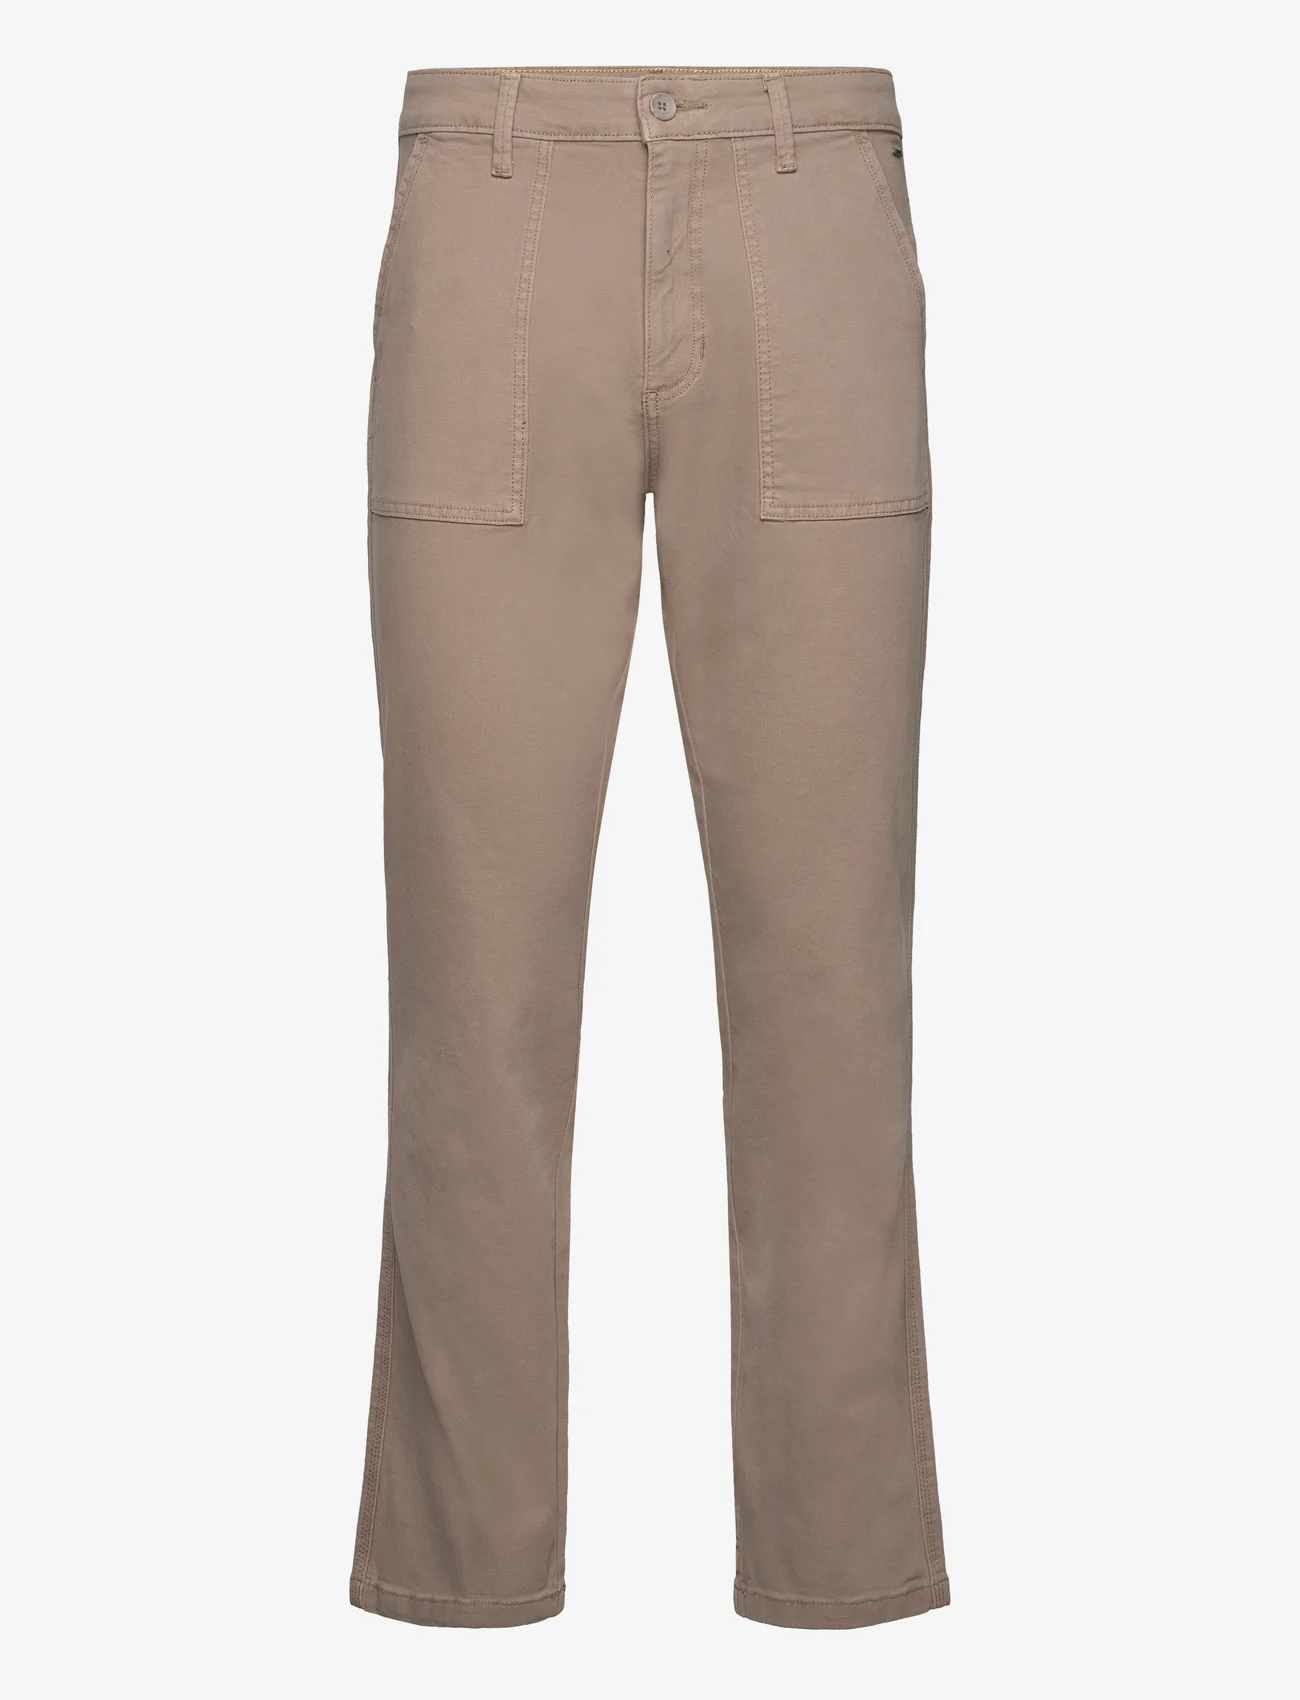 ONLY & SONS - ONSEDGE-FREE LOOSE CANWAS 0035 PANT - kasdienio stiliaus kelnės - vintage khaki - 0